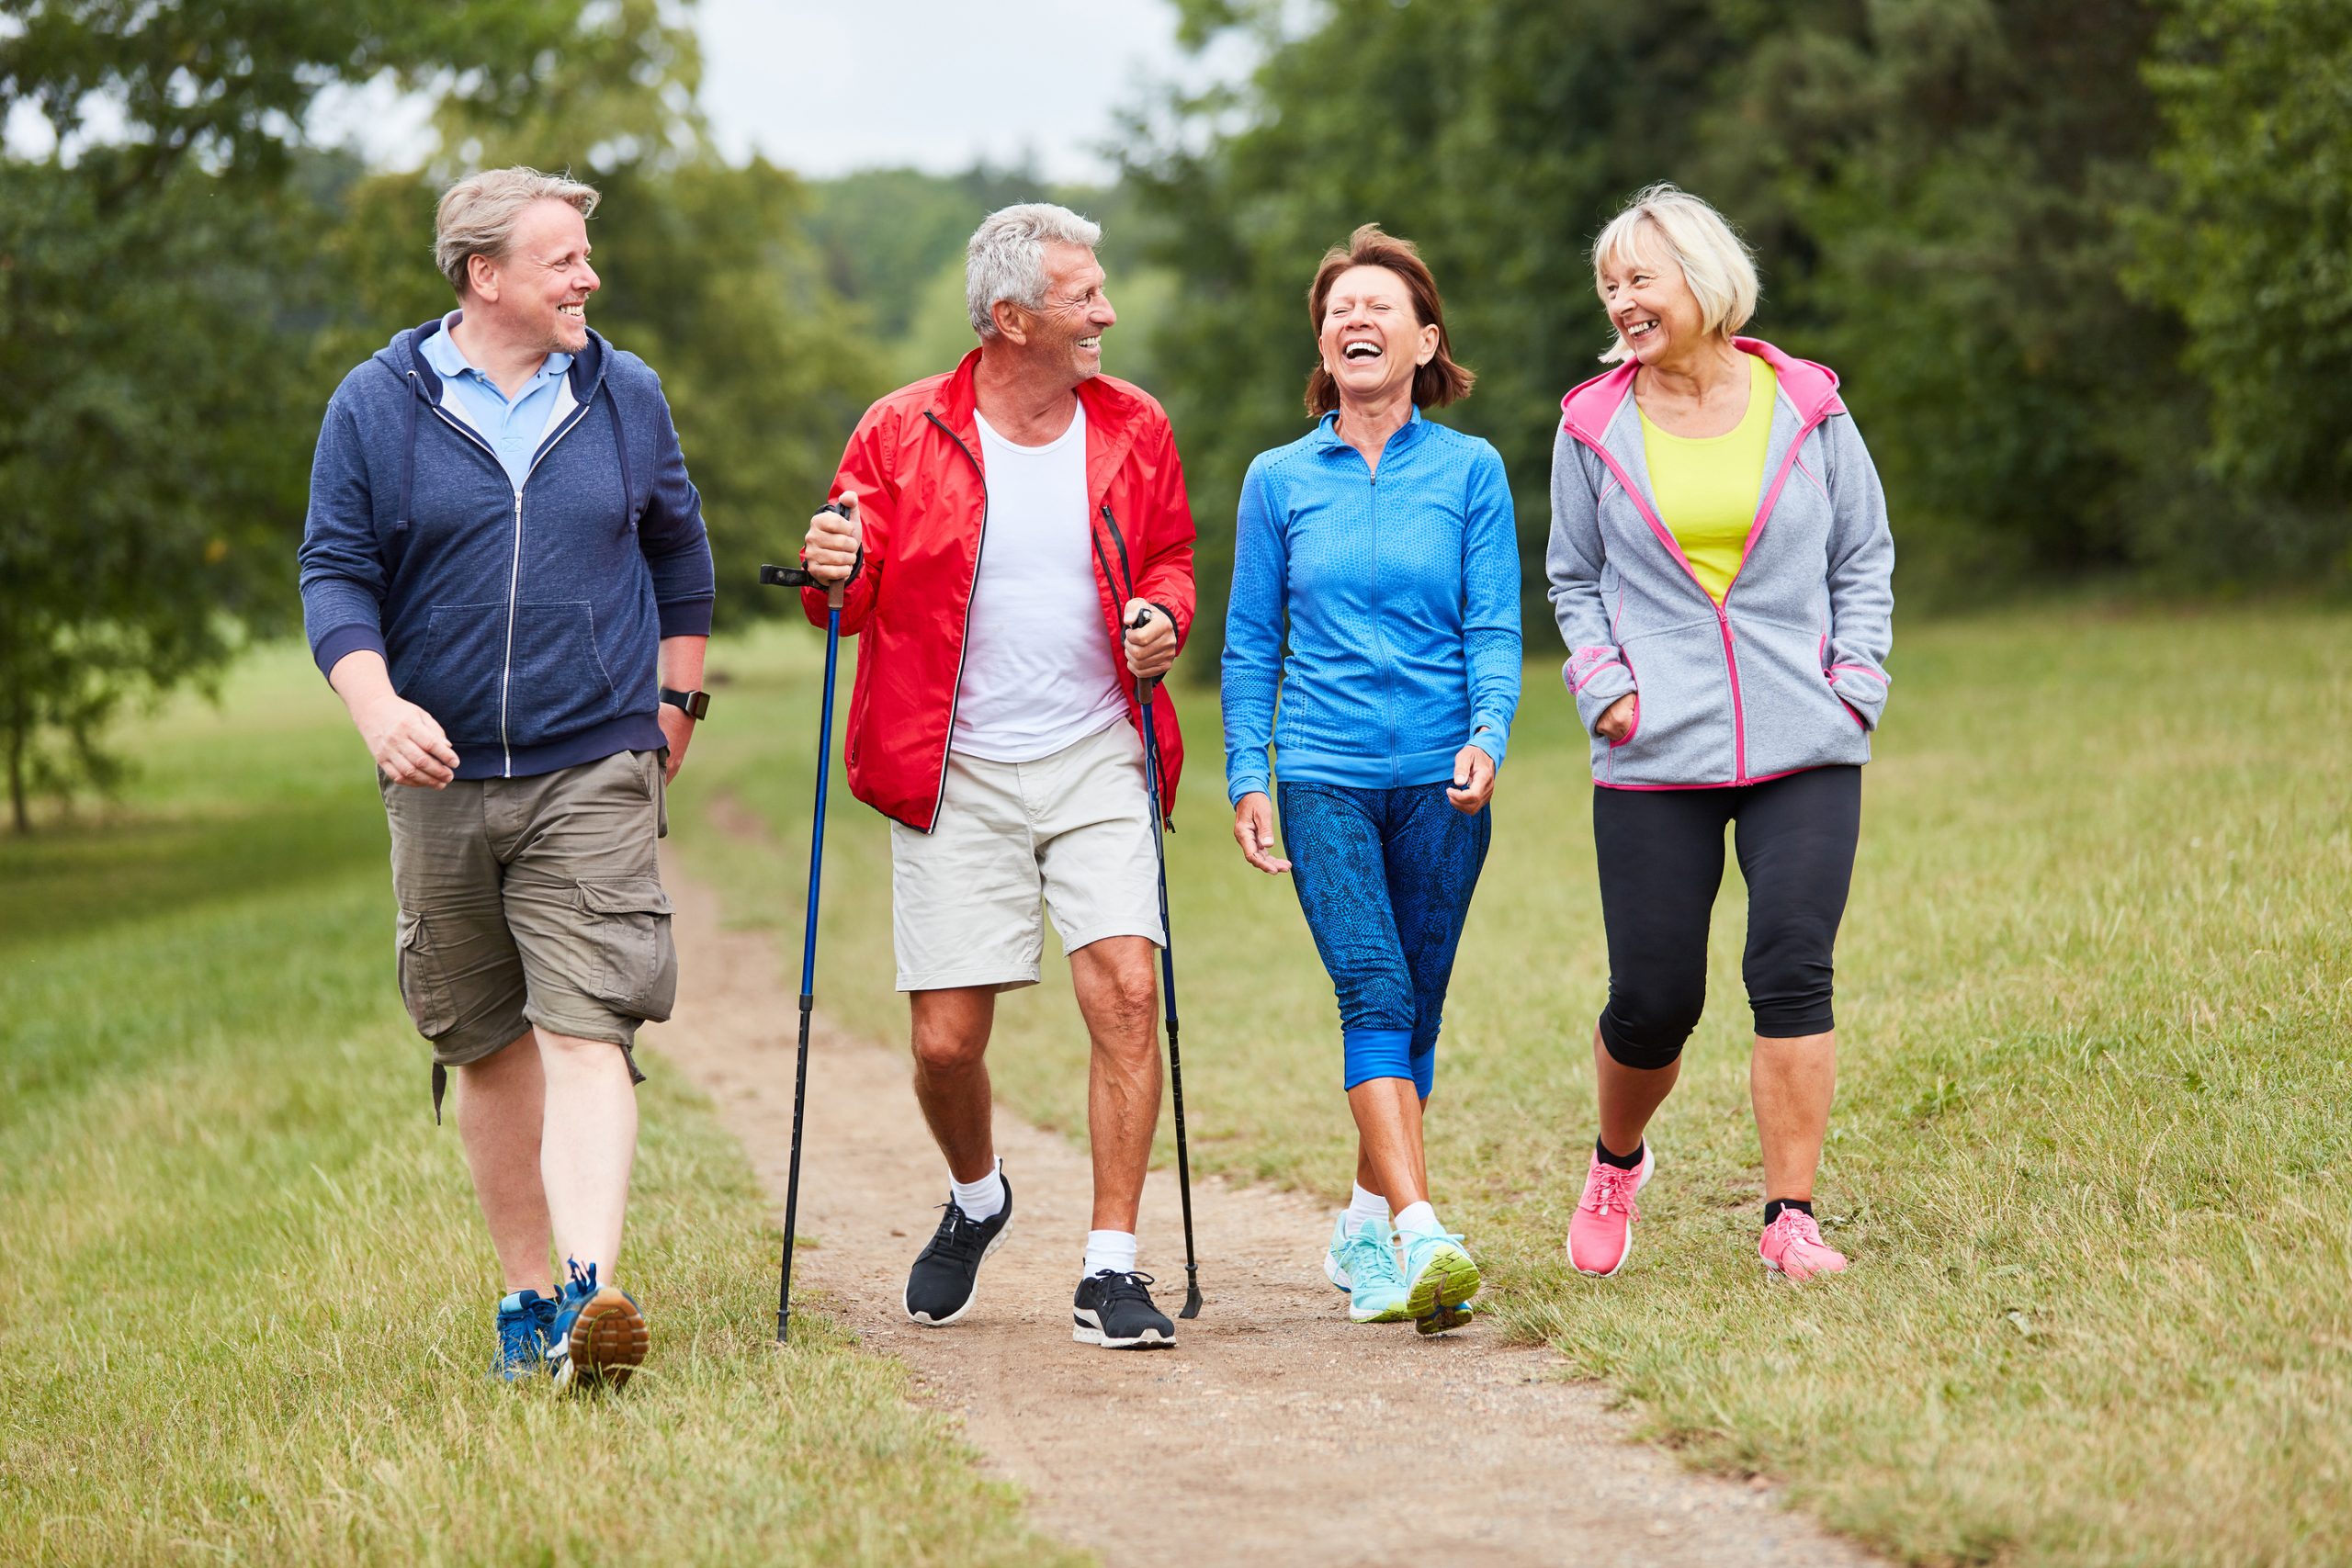 Vận động đúng cách giúp người già khỏe mạnh và kéo dài tuổi thọ hơn